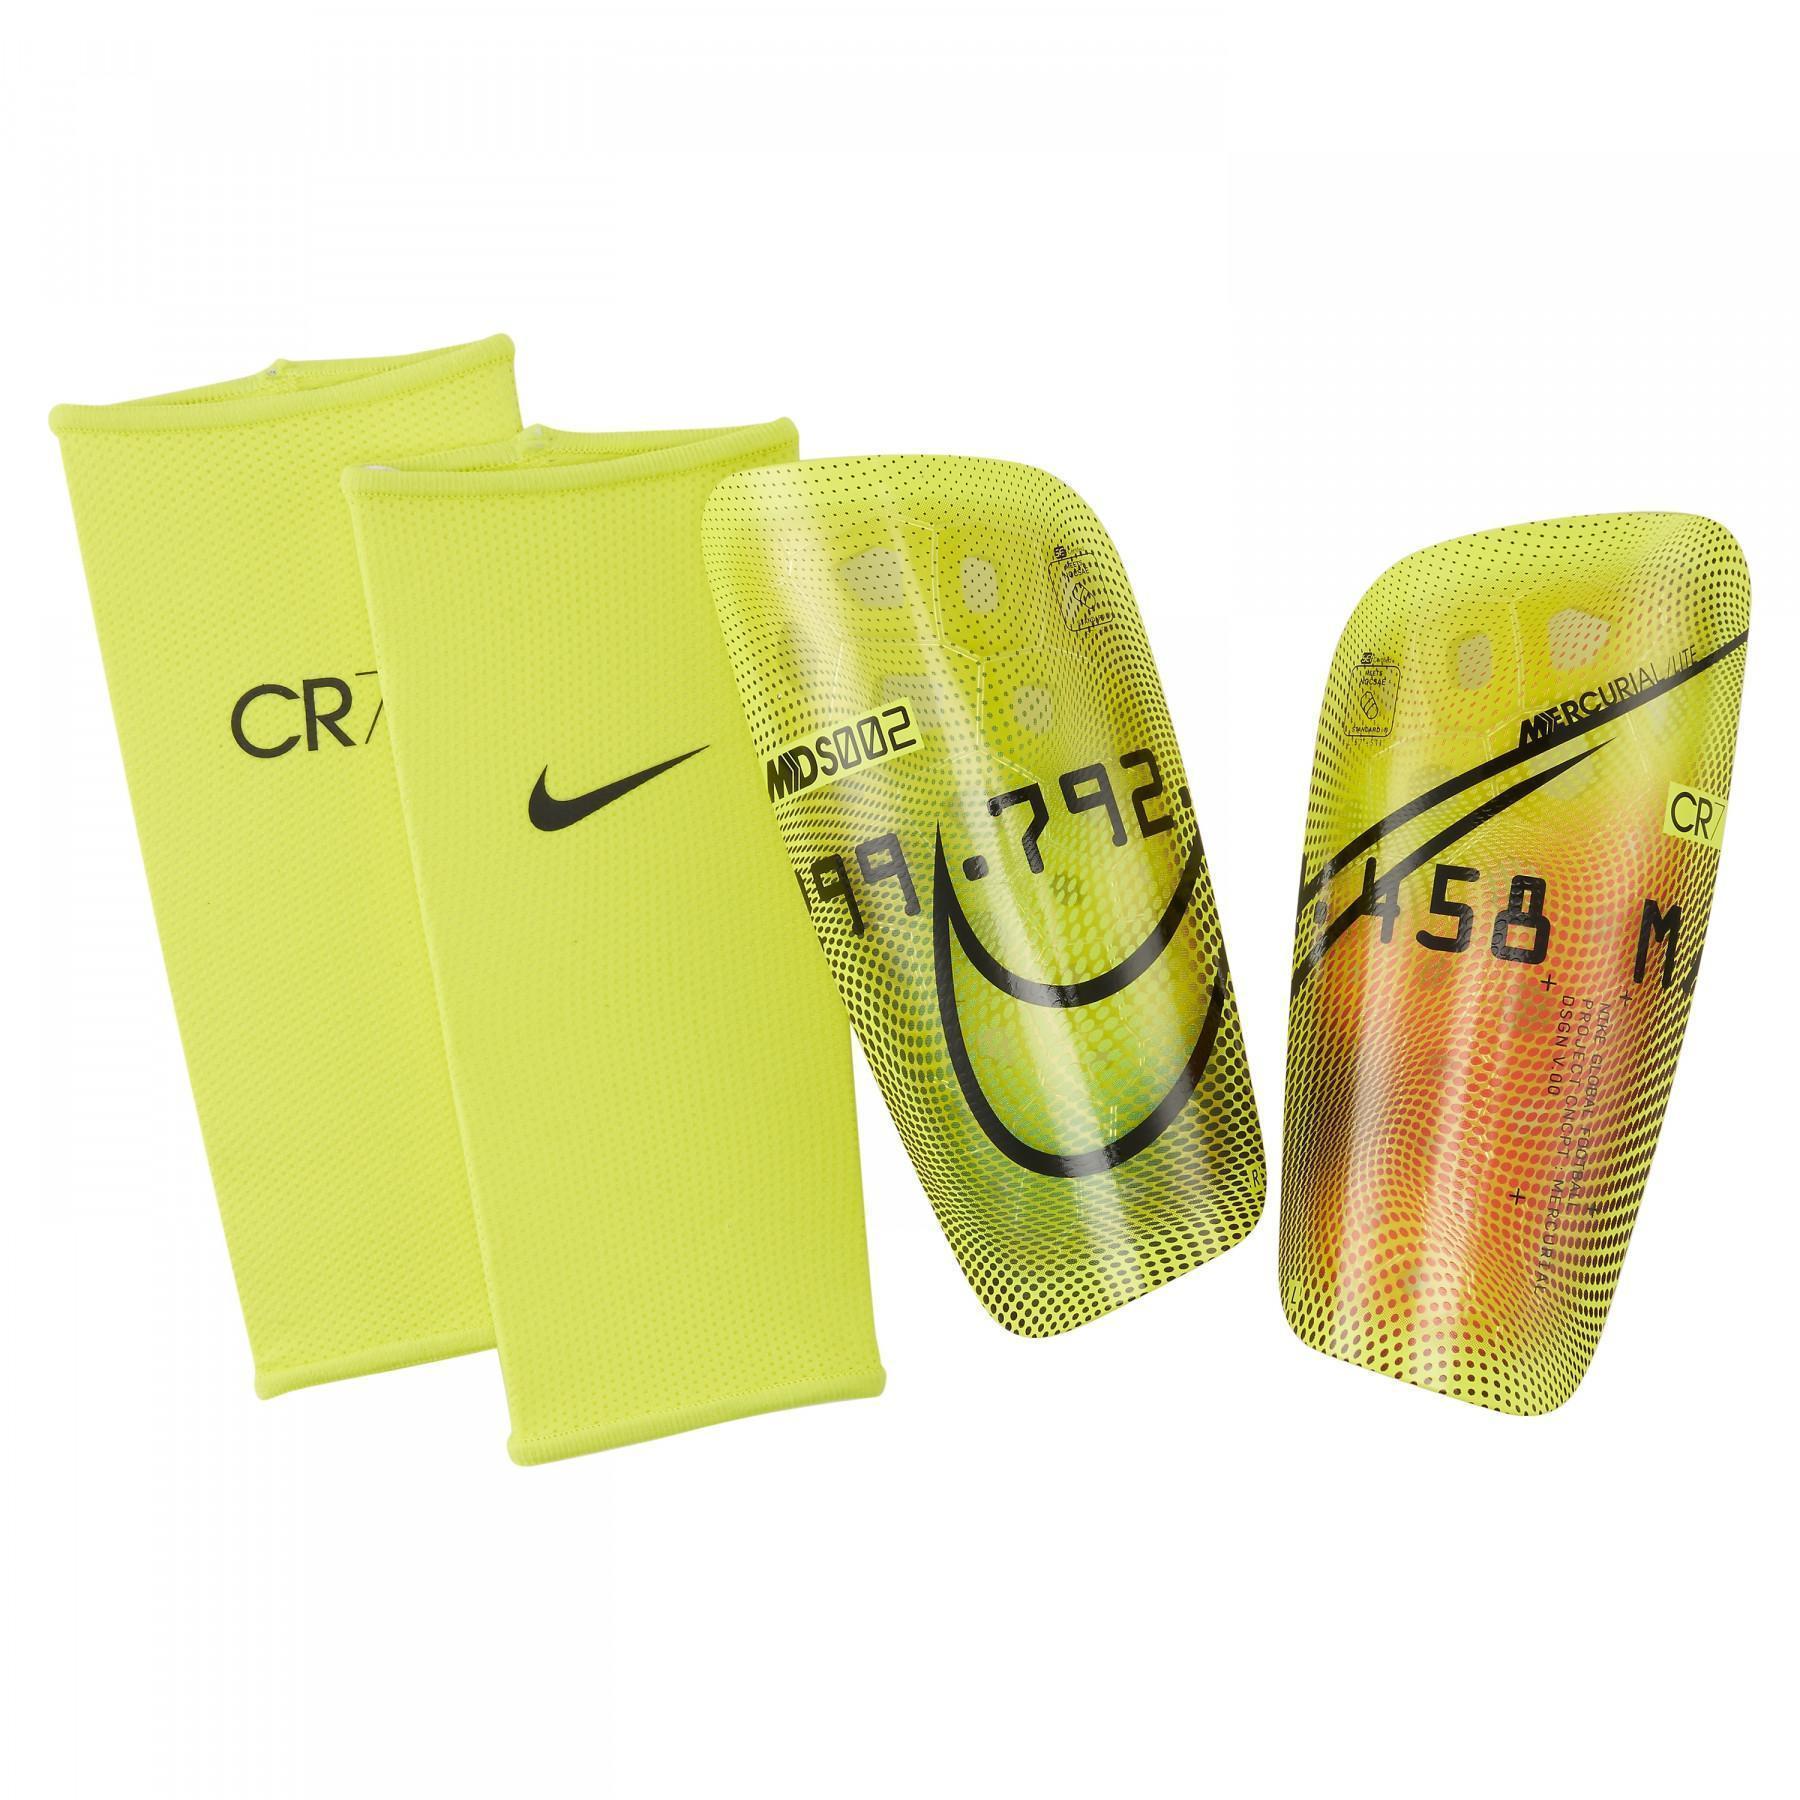 Scheenbeschermers Nike Mercurial Lite CR7